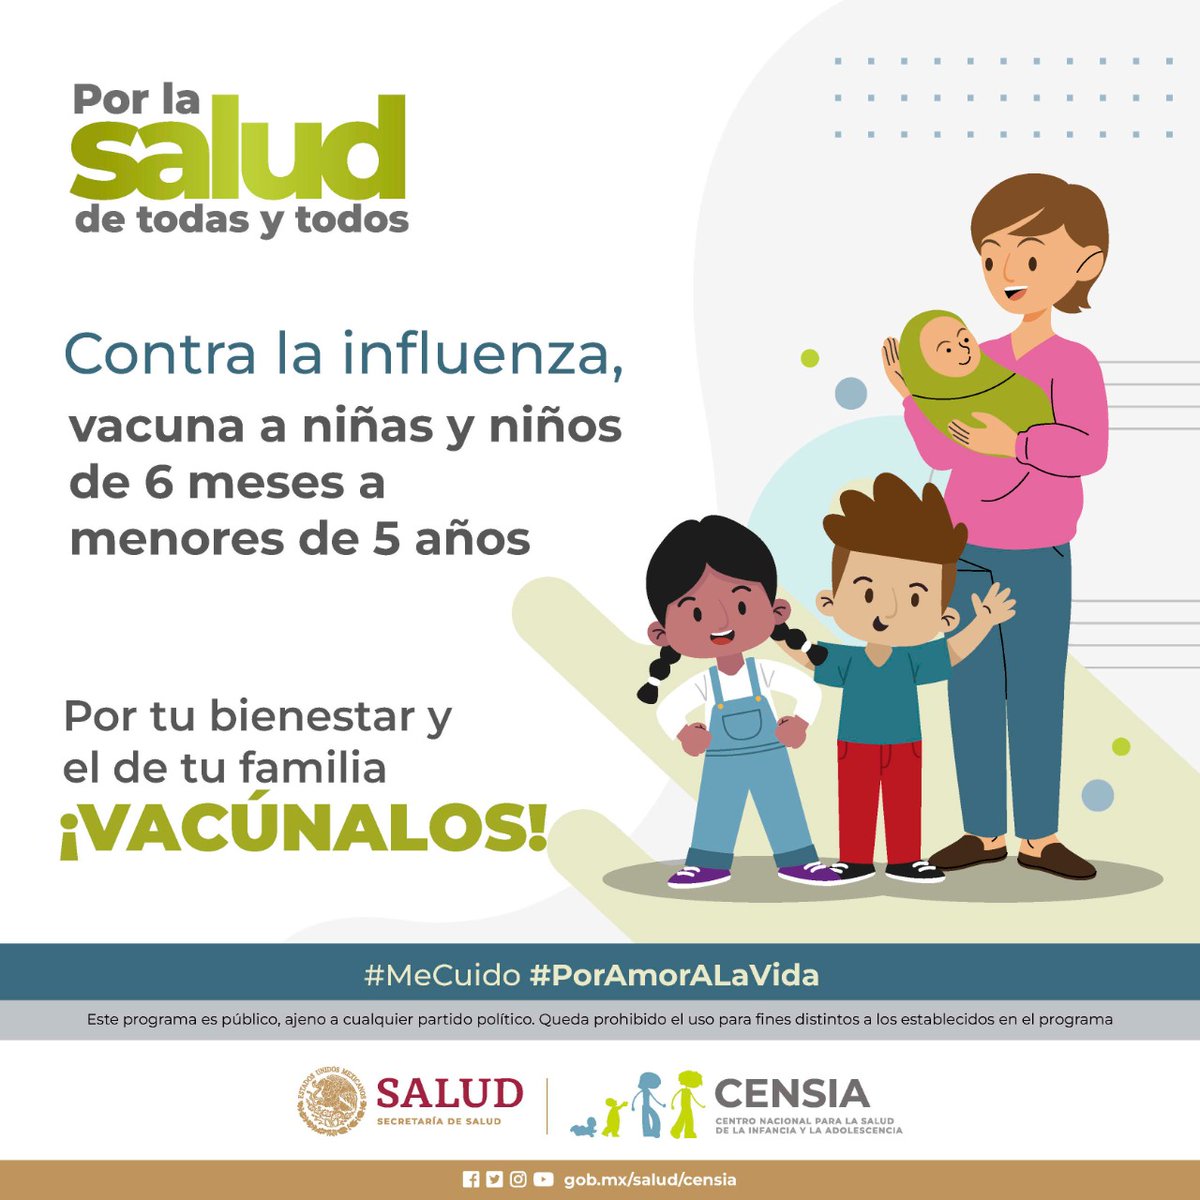 Contra la #Influenza ¡Vacúnate!    
En esta temporada ¡Protege a tus hijas e hijos!
La vacuna es gratuita y segura ¡#PorLaSaludDeTodasYTodos!
#MeCuido #PorAmorALaVida